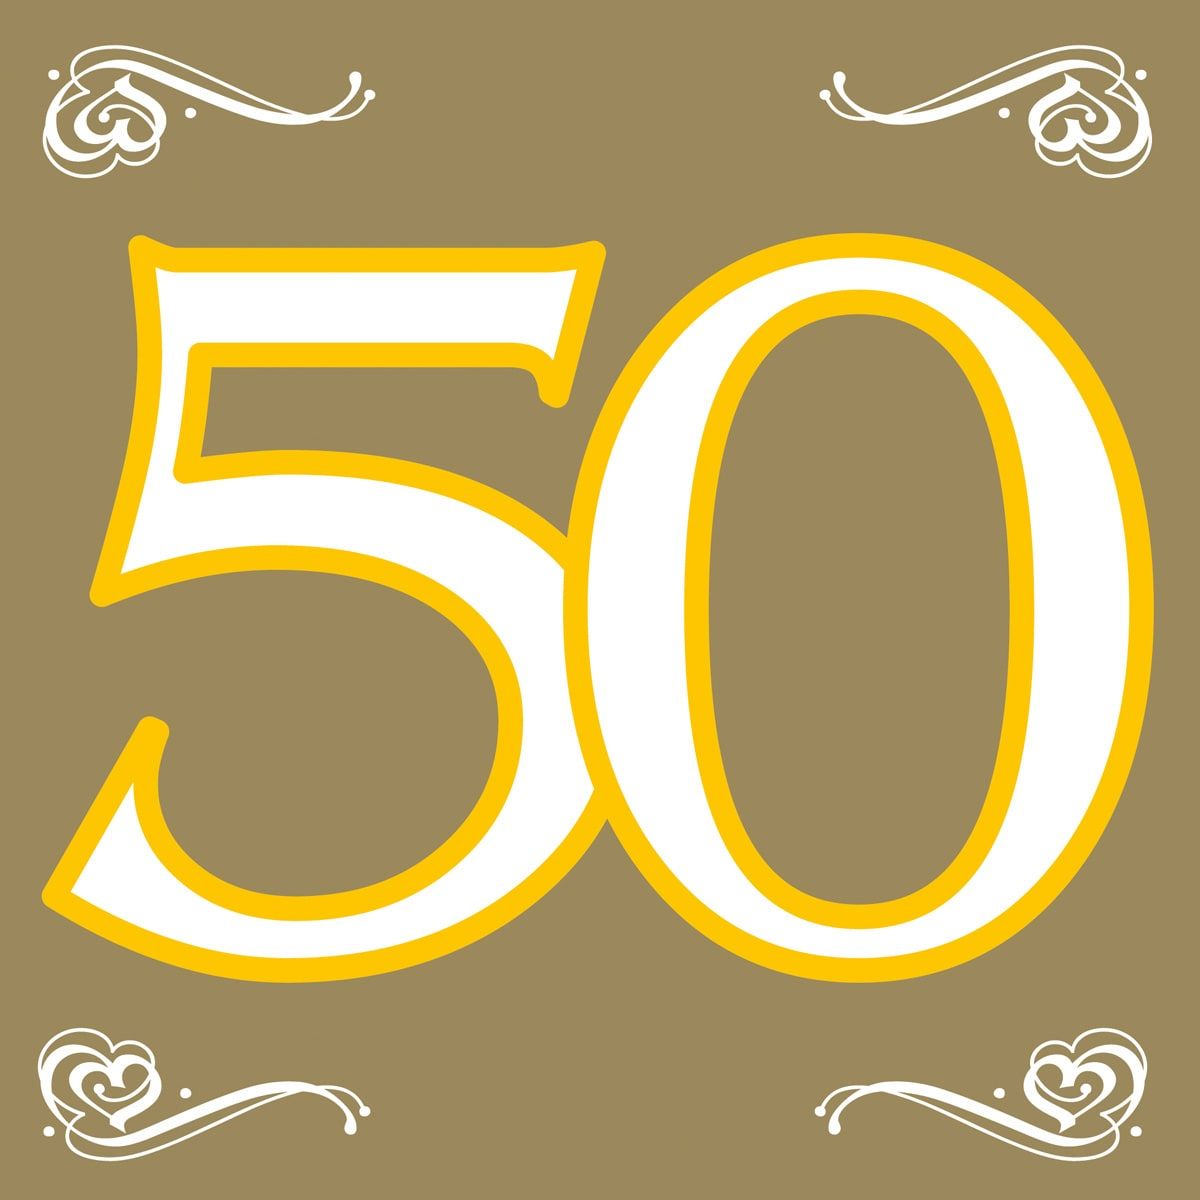 Jubileum 50 jaar gouden servetten 20 stuks